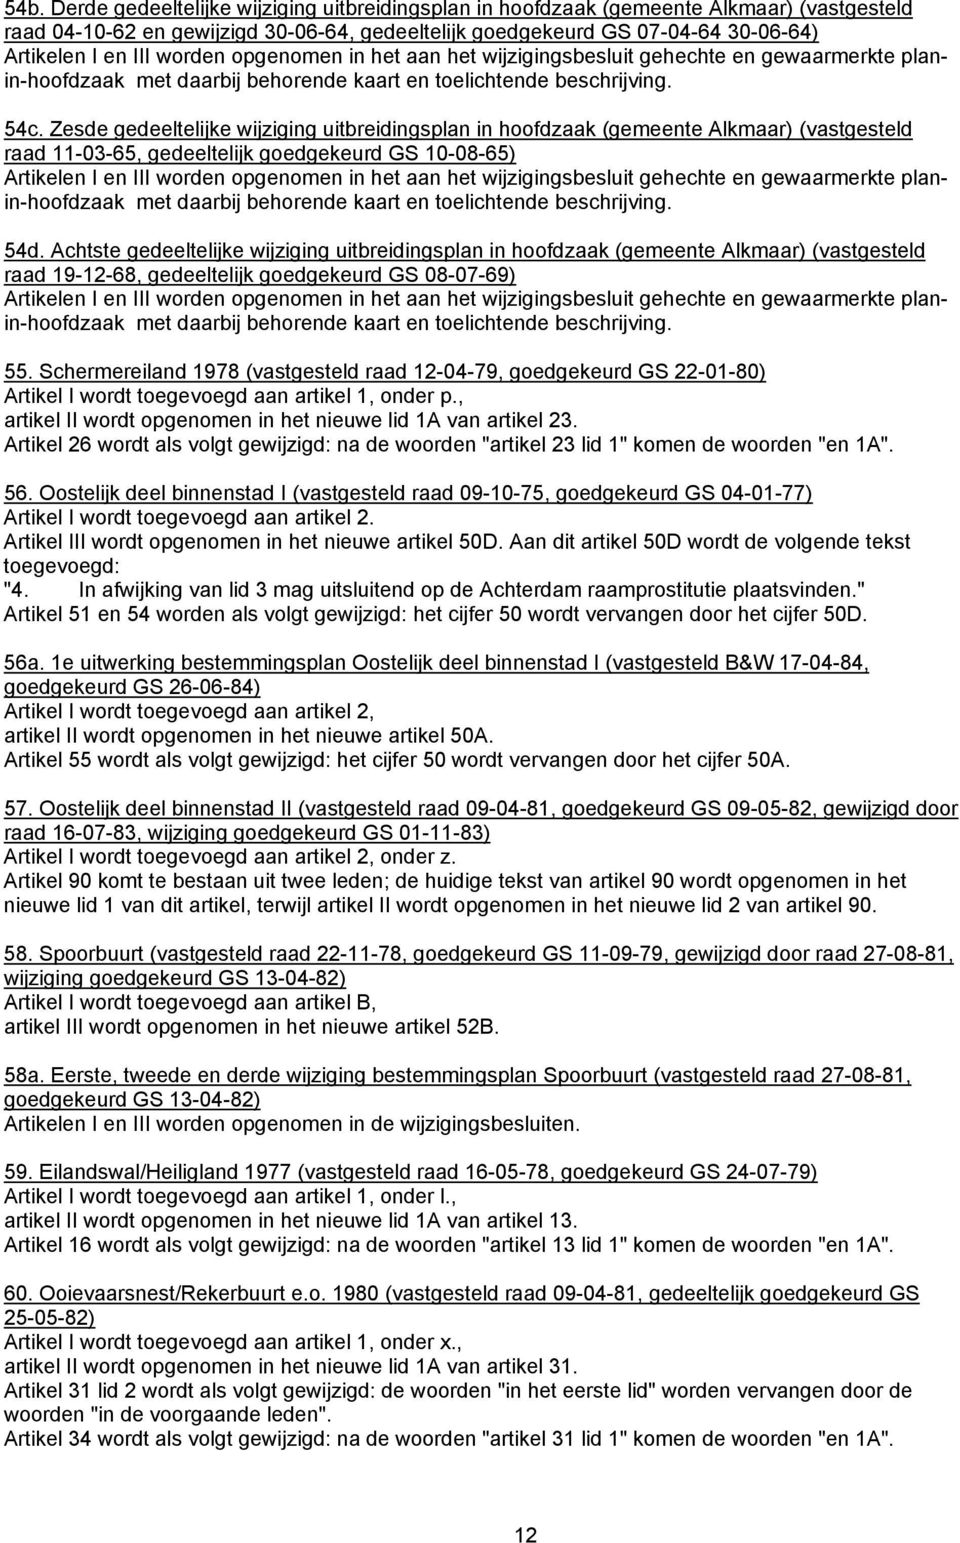 Zesde gedeeltelijke wijziging uitbreidingsplan in hoofdzaak (gemeente Alkmaar) (vastgesteld raad 11-03-65, gedeeltelijk goedgekeurd GS 10-08-65) Artikelen I en III worden opgenomen in het aan het